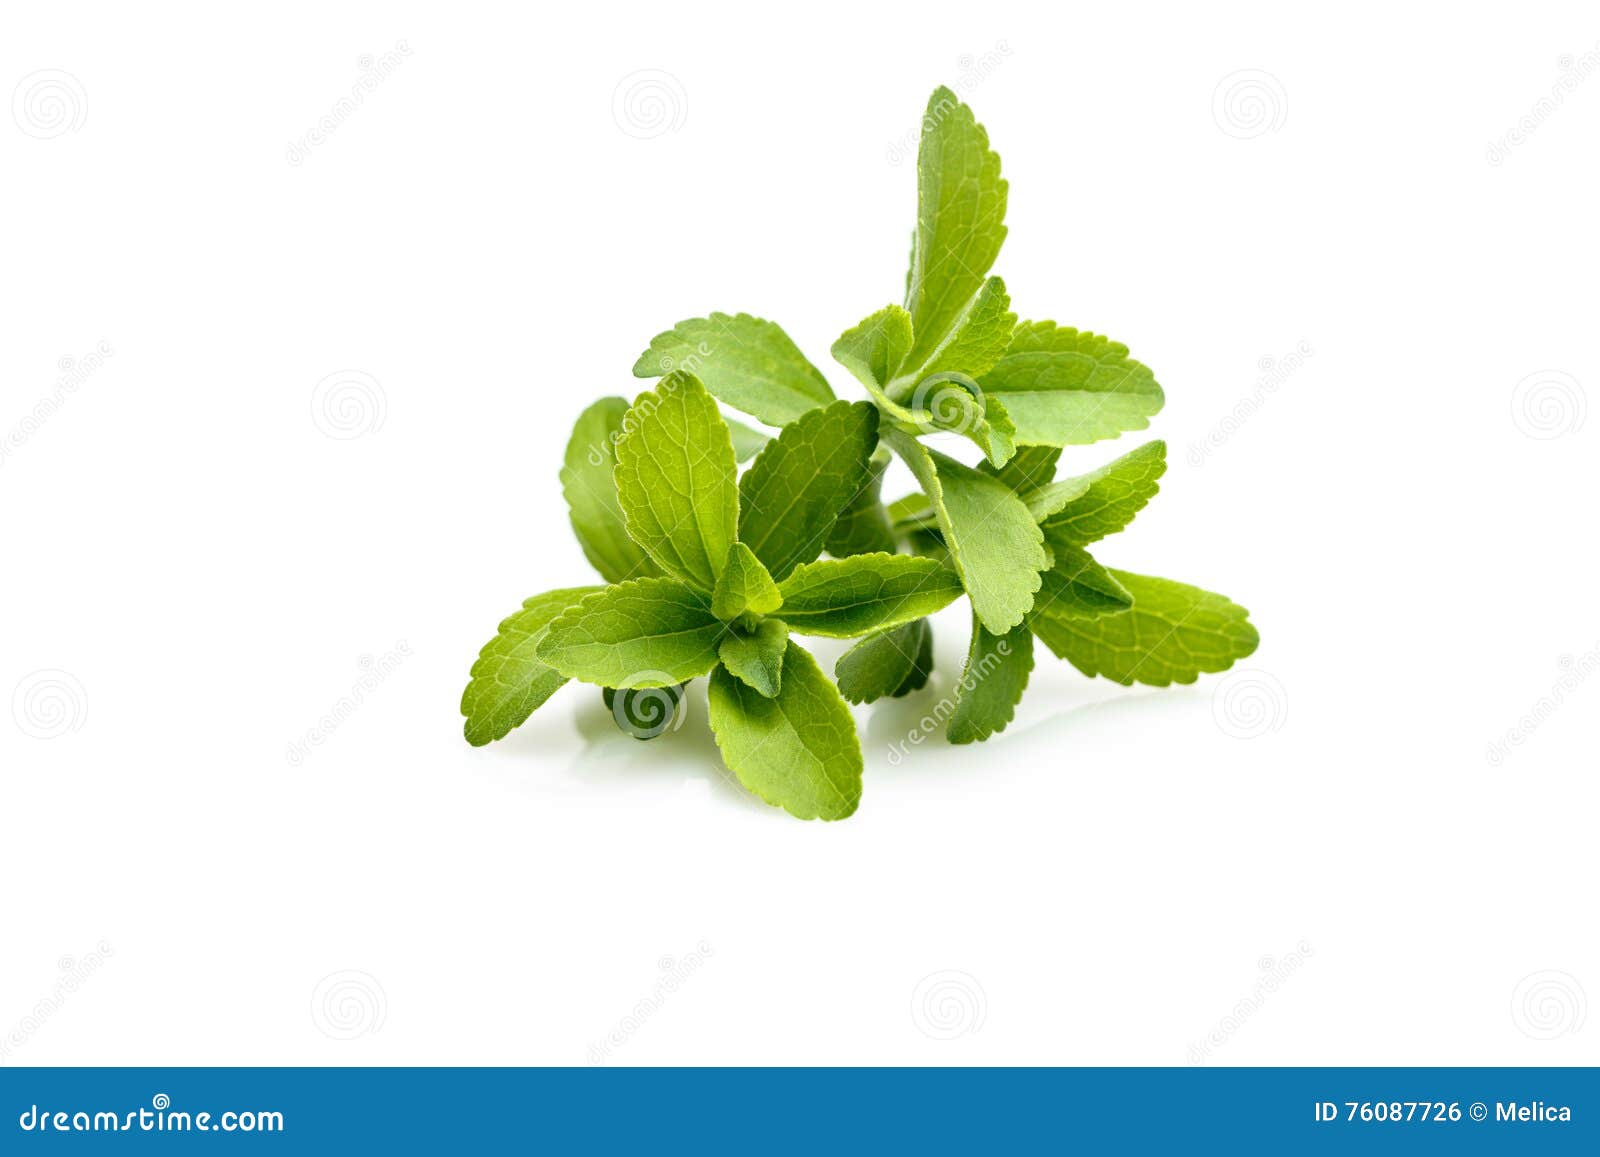 stevia or sweet herb